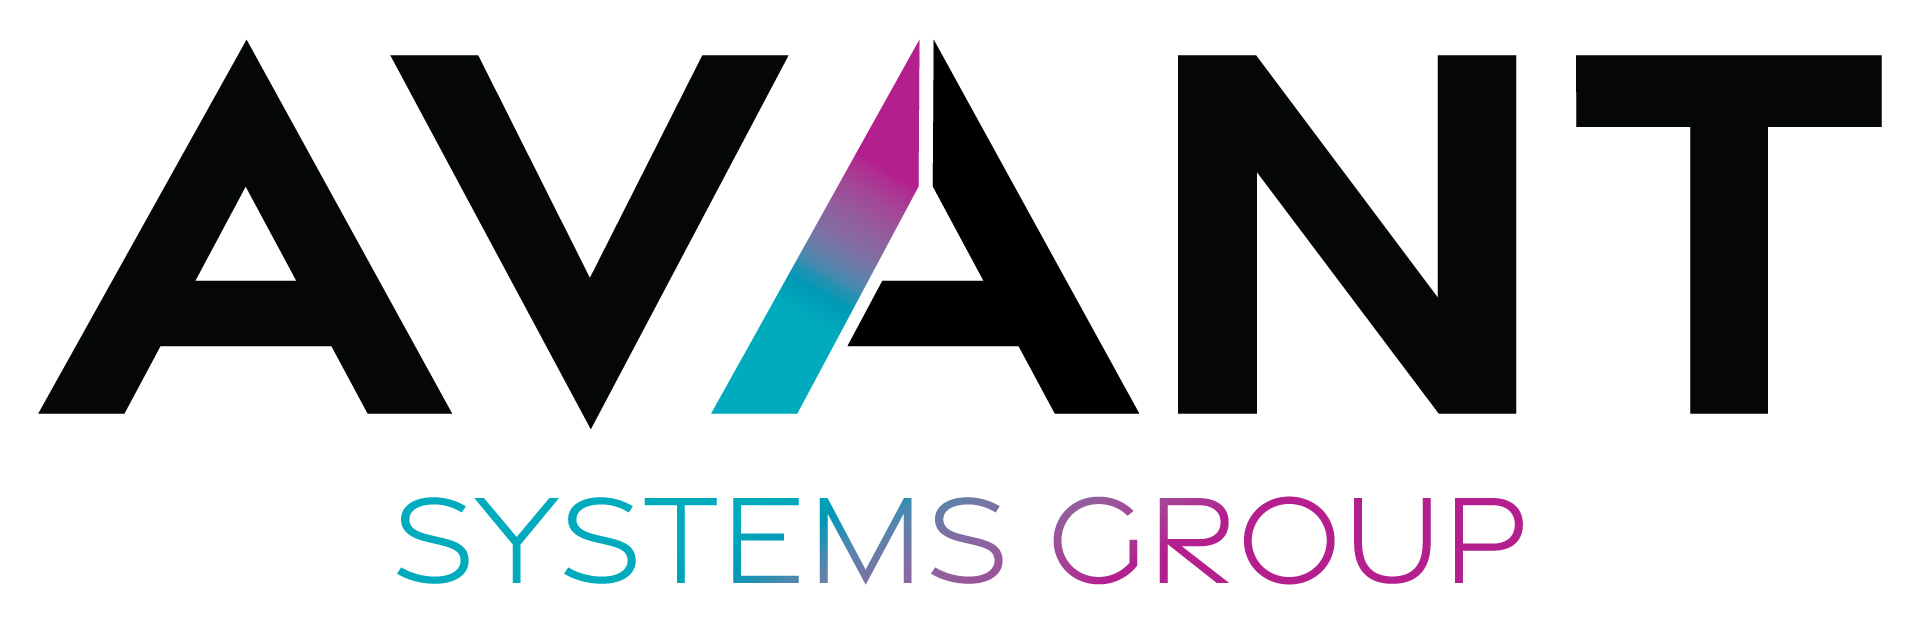 Avant systems group 徽标